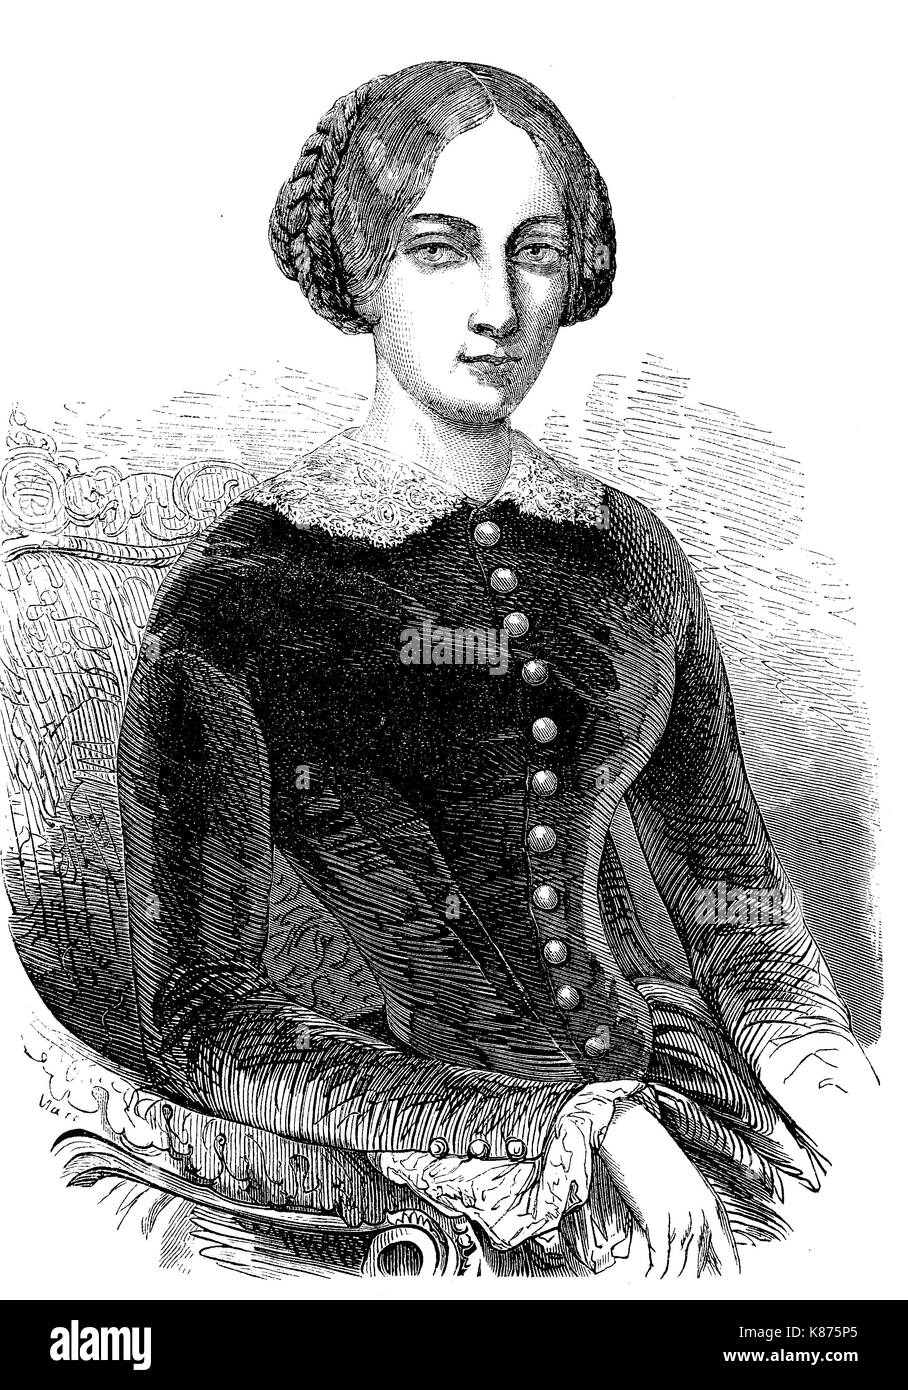 Maria Alexandrowna, geborene Prinzessin Marie von Hessen und bei Rhein, 1824 - 1880, wurde Kaiserin Consort von Russland als die erste Frau von Kaiser Alexander II., digitale Reproduktion eines ursprünglichen woodprint aus dem 19. Jahrhundert verbessert Stockfoto